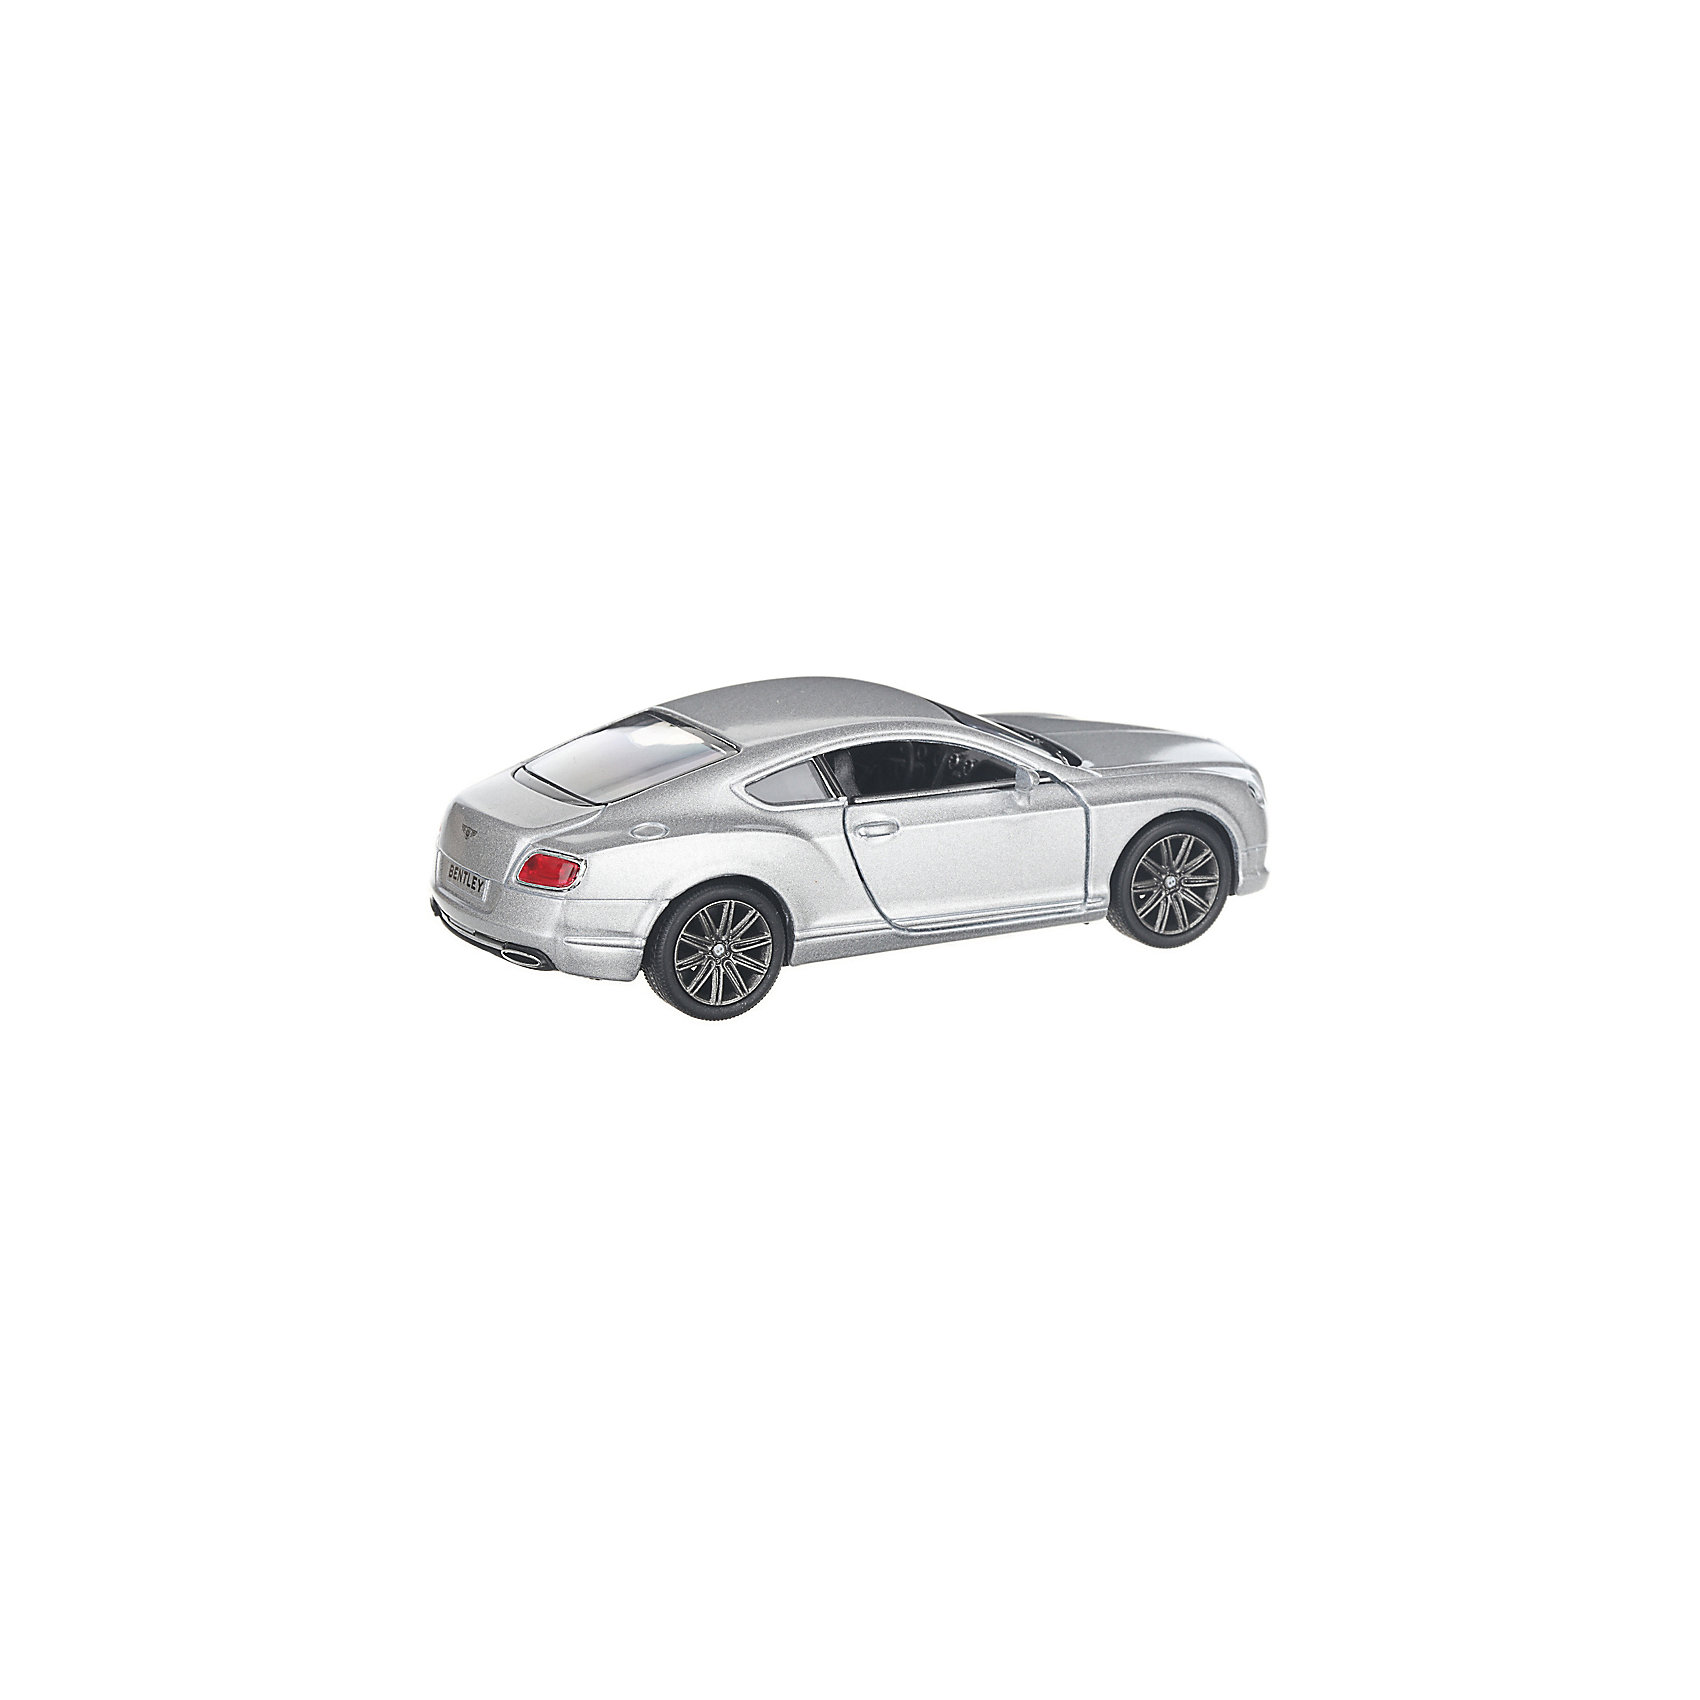 Коллекционная машинка 2012 Bentley Continental GT, серебристая Serinity Toys 13233282